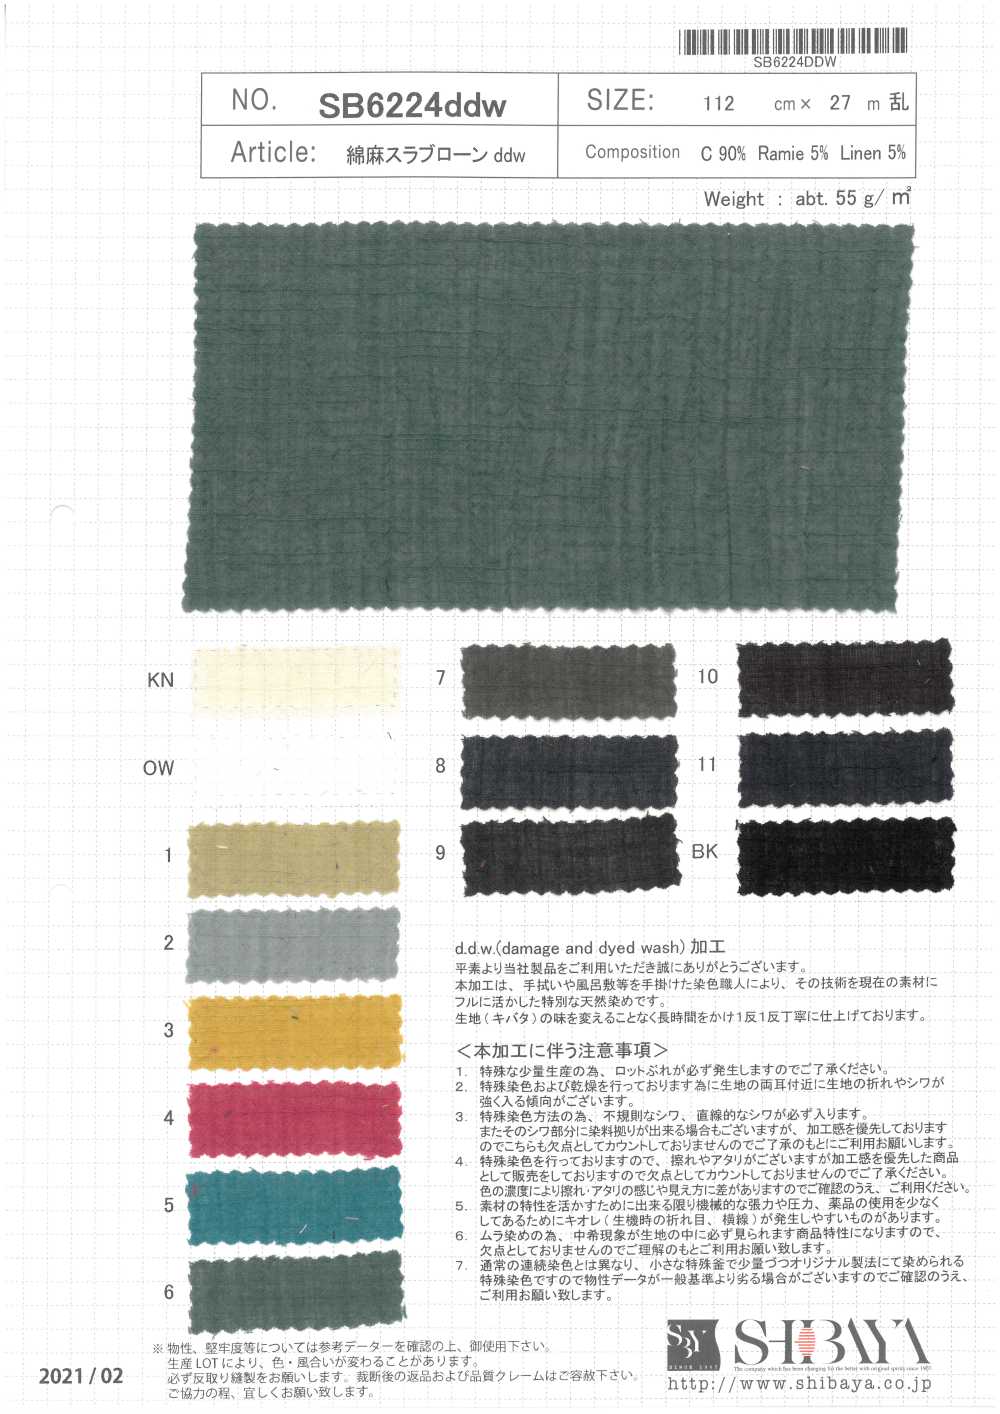 SB6224ddw Césped De Losa De Lino DDW[Fabrica Textil] SHIBAYA